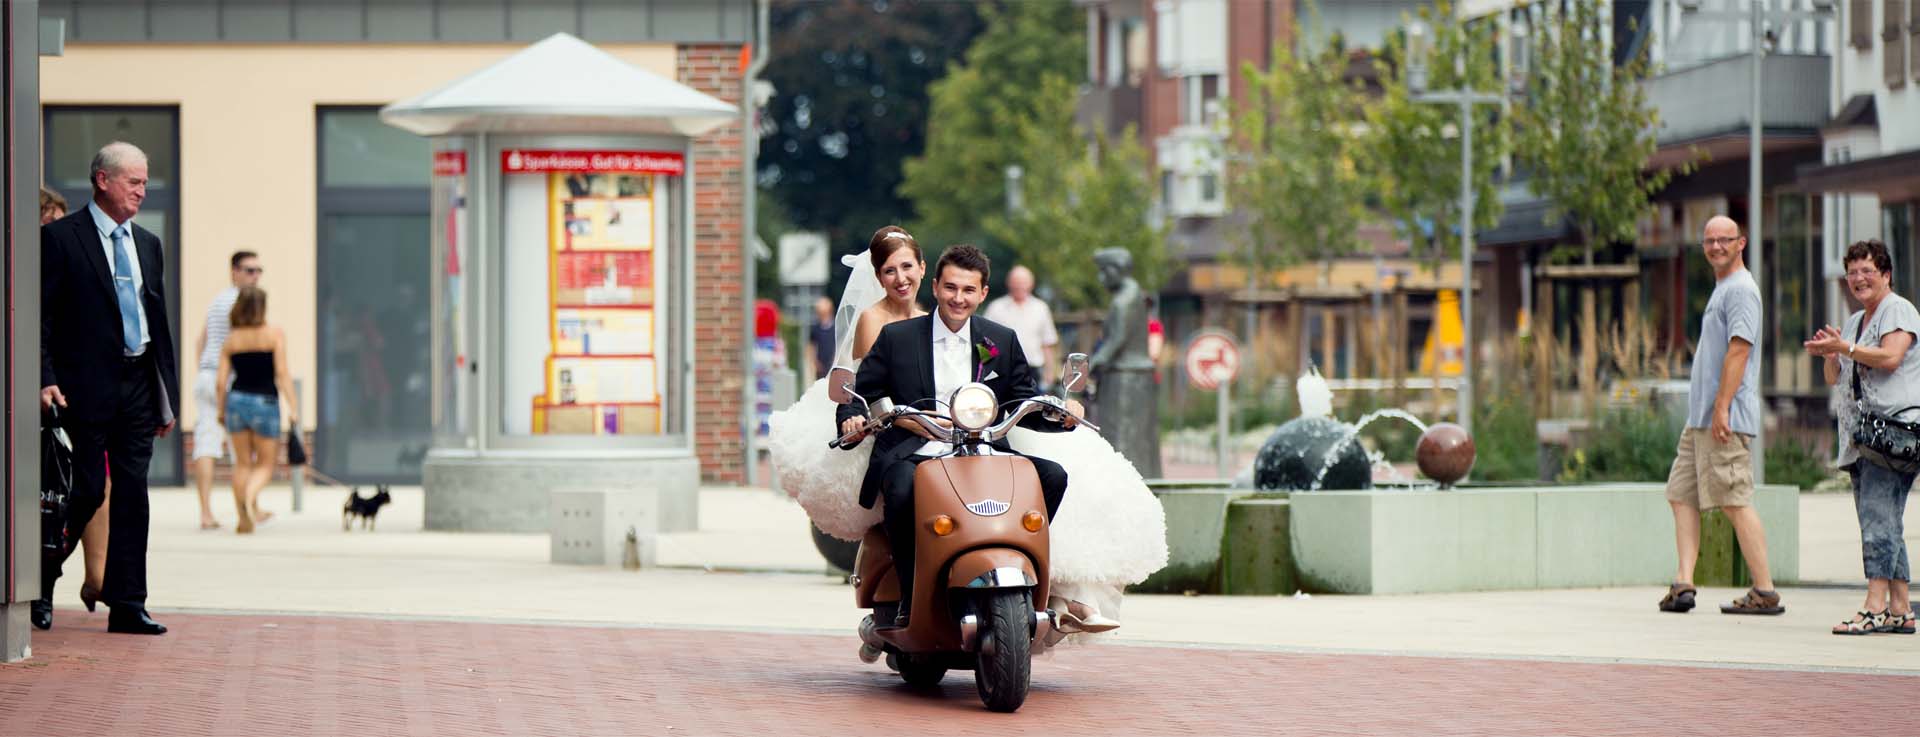 Brautpaar auf einem Mofa fahren durch die City